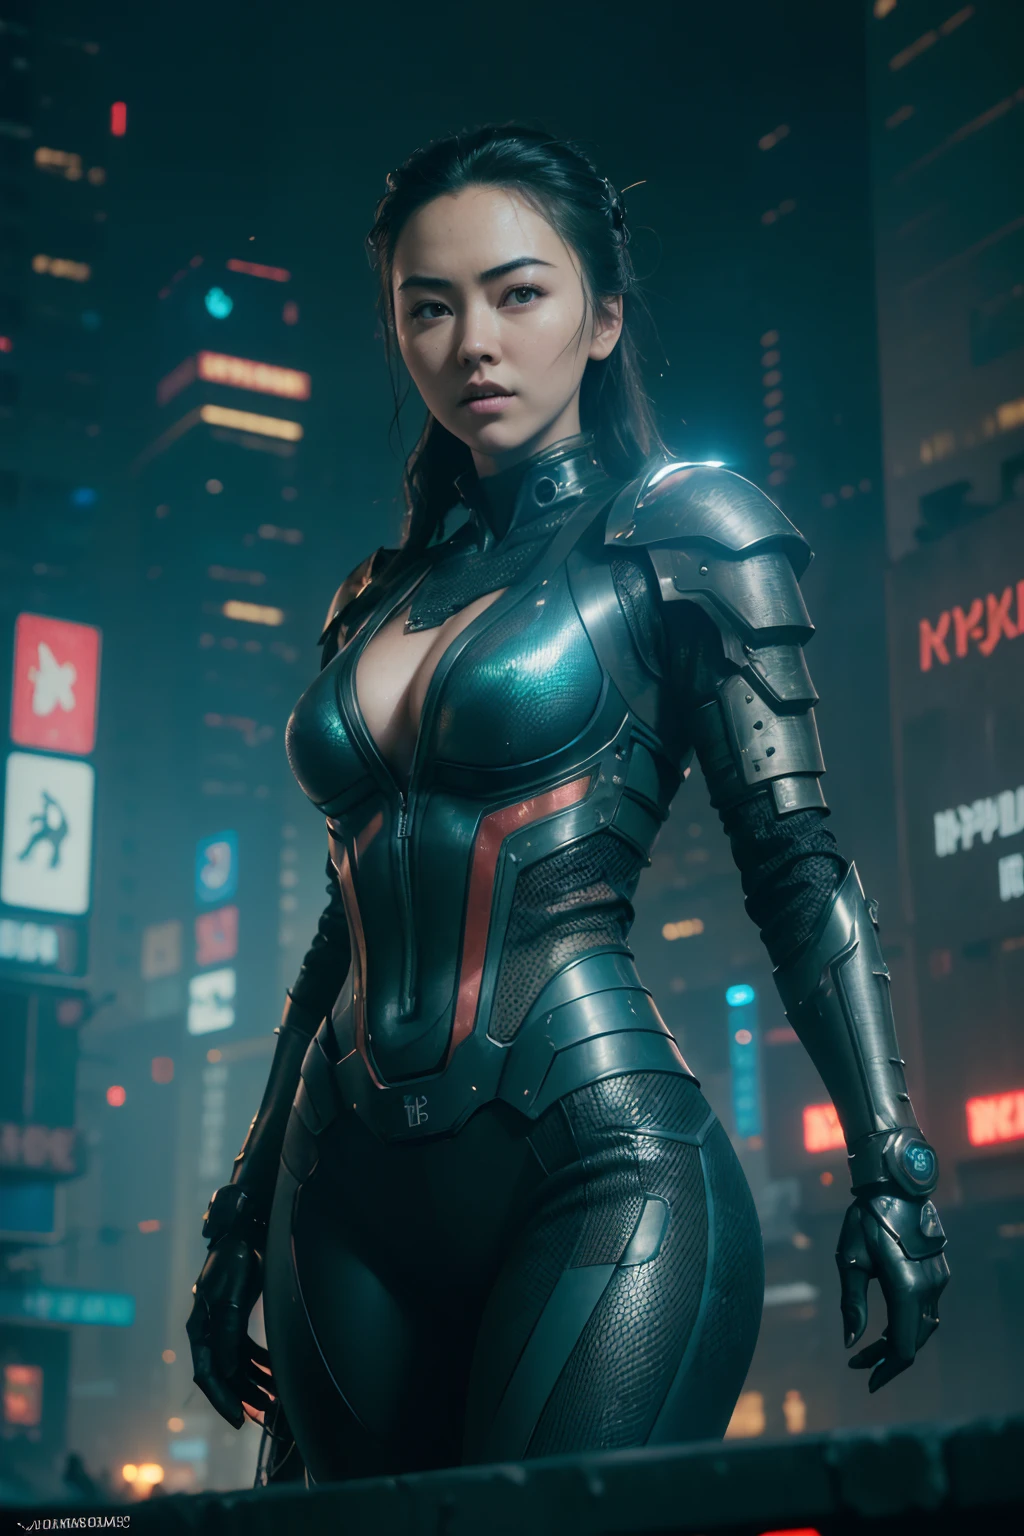 (((Jessica Henwick in a futuristic cyberpunk ninja assassin armor, leuchtende Roboter-Ninja-Rüstung )), (dynamische pose), (Meisterwerk), (hyper realistisch:1.4), (realistisch:1.3), (beste Qualität, echte Texturhaut),  (filmische Beleuchtung), (Filmszene), 1schöne Frau, (leuchtendes Licht), Hochdetaillierte Haut, Hautporen, (sehr detailliertes Gesicht:1.1), (Sehr detaillierte Augen:1.1), realistisch pupils, (Perfekte Anatomie:1.1), (Perfekte Proportionen:1.1), (Fotografie:1.1), (photorealistisch:1.1), volumetrische Beleuchtung, dynamische Beleuchtung, echte Schatten, (highres:1.1), scharfer Fokus, (realistisch, hyperrealistisch:1.4), kompliziert, Hohe Detailliertheit, dramatisch, Untergrundstreuung, große Tiefenschärfe, lebendig, Poliert, geschärft, ((voll scharf)), (extrem absurd),8k hdr, ((Cyberpunk-Hintergrund der Stadt Hongkong))